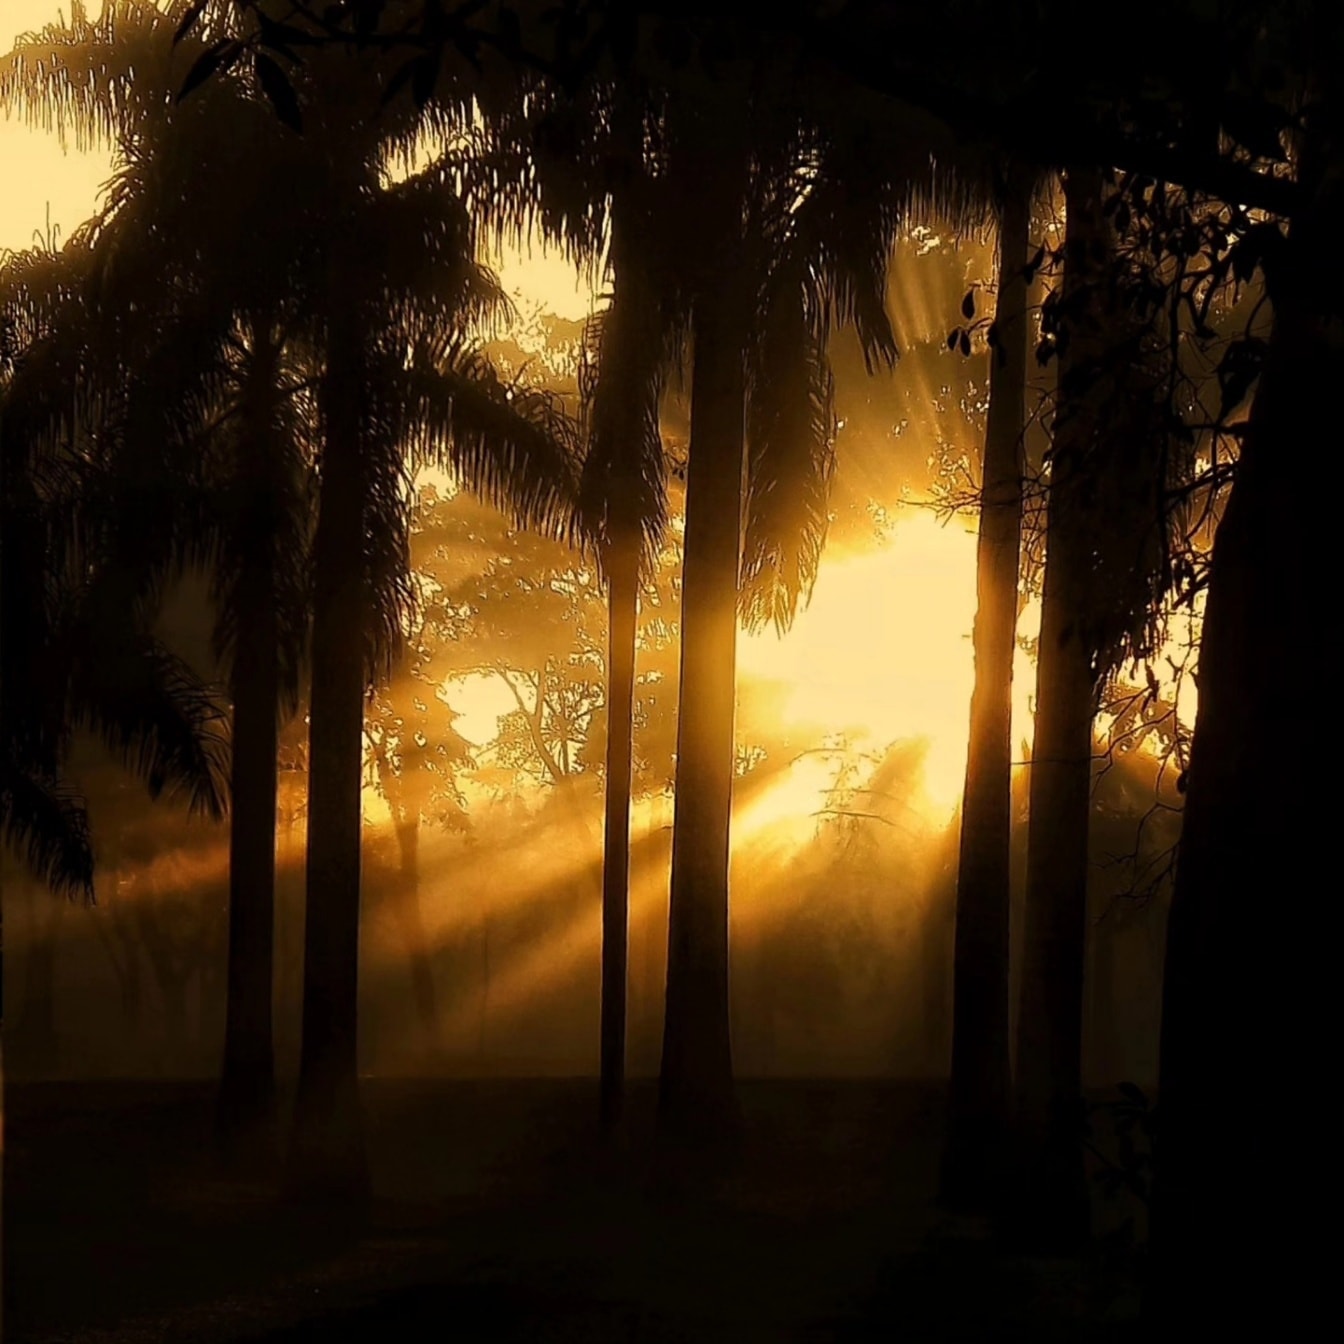 Grafik av solens ljusa strålar i en mörk skog med en silhuett av träd i skugga